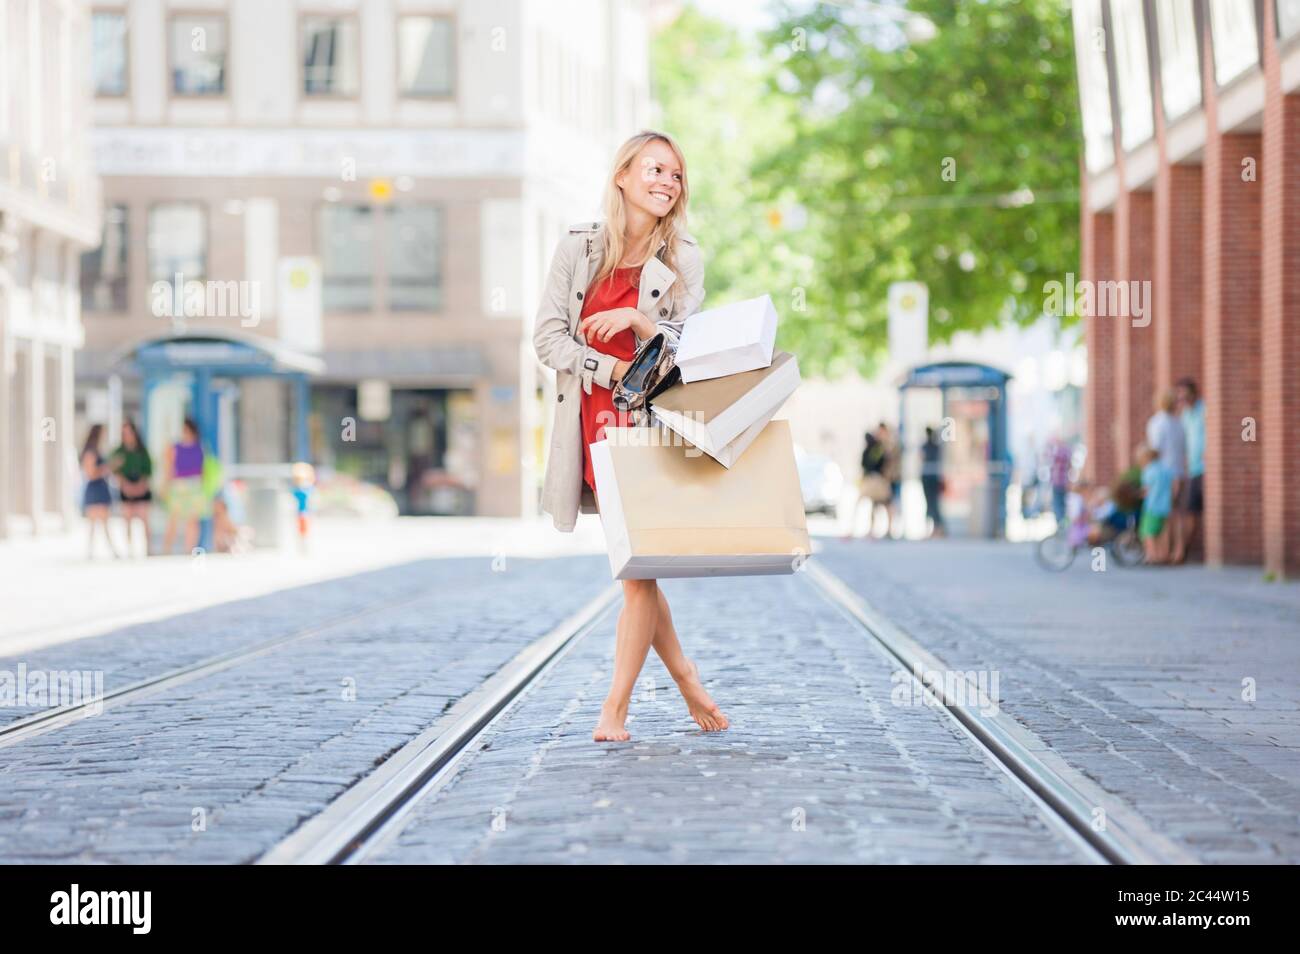 Lächelnde Frau, die Schuhe und Einkaufstaschen hält, während sie barfuß auf der Straße läuft Stockfoto